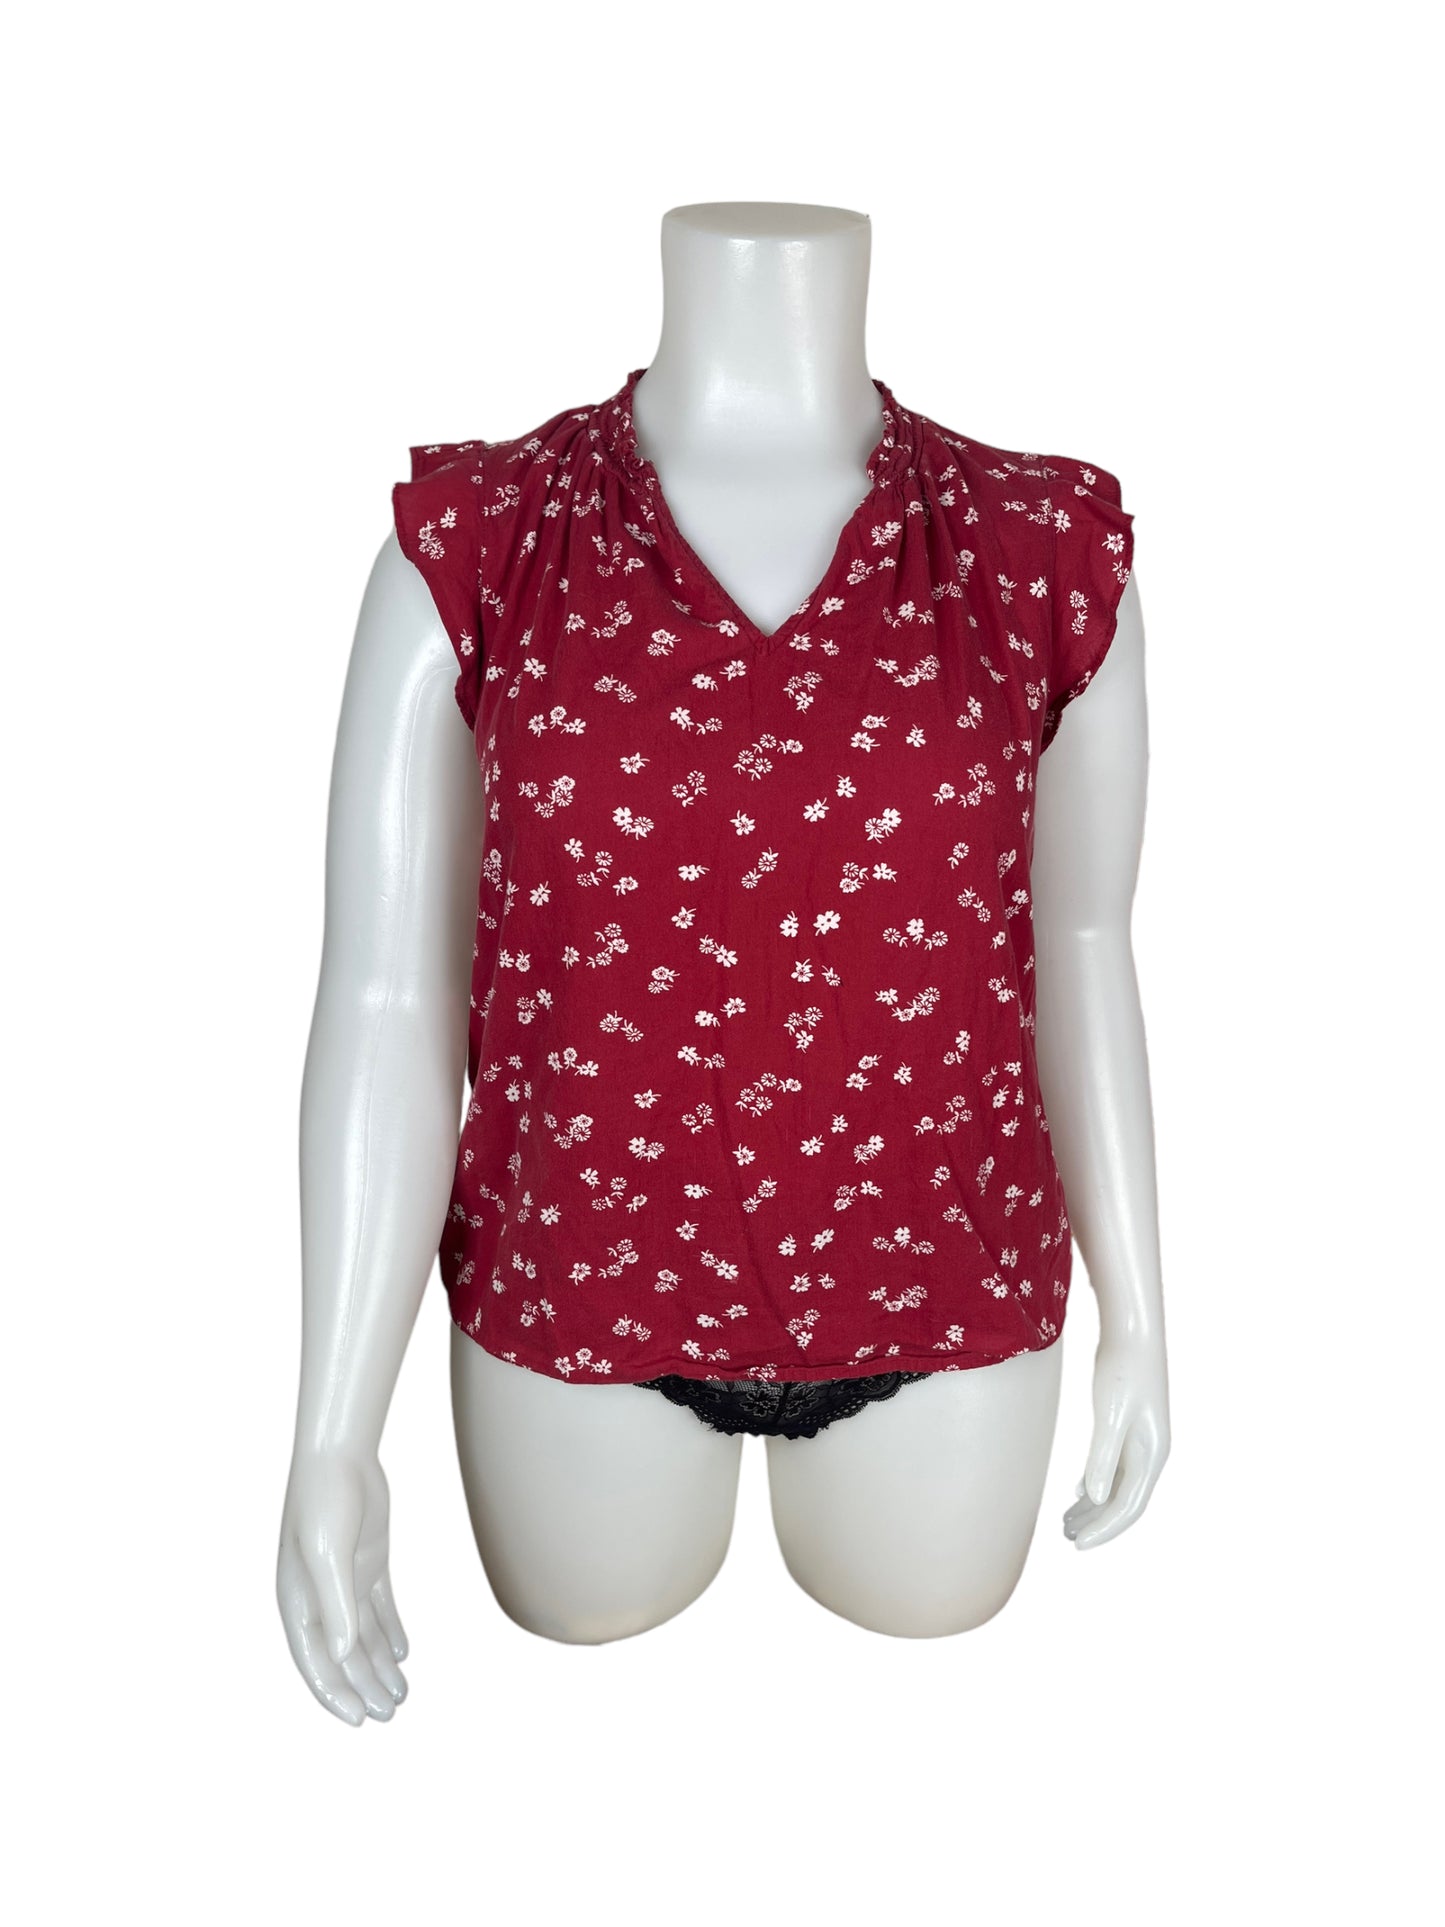 "Old Navy" Red V-neck floral Shirt (XL)